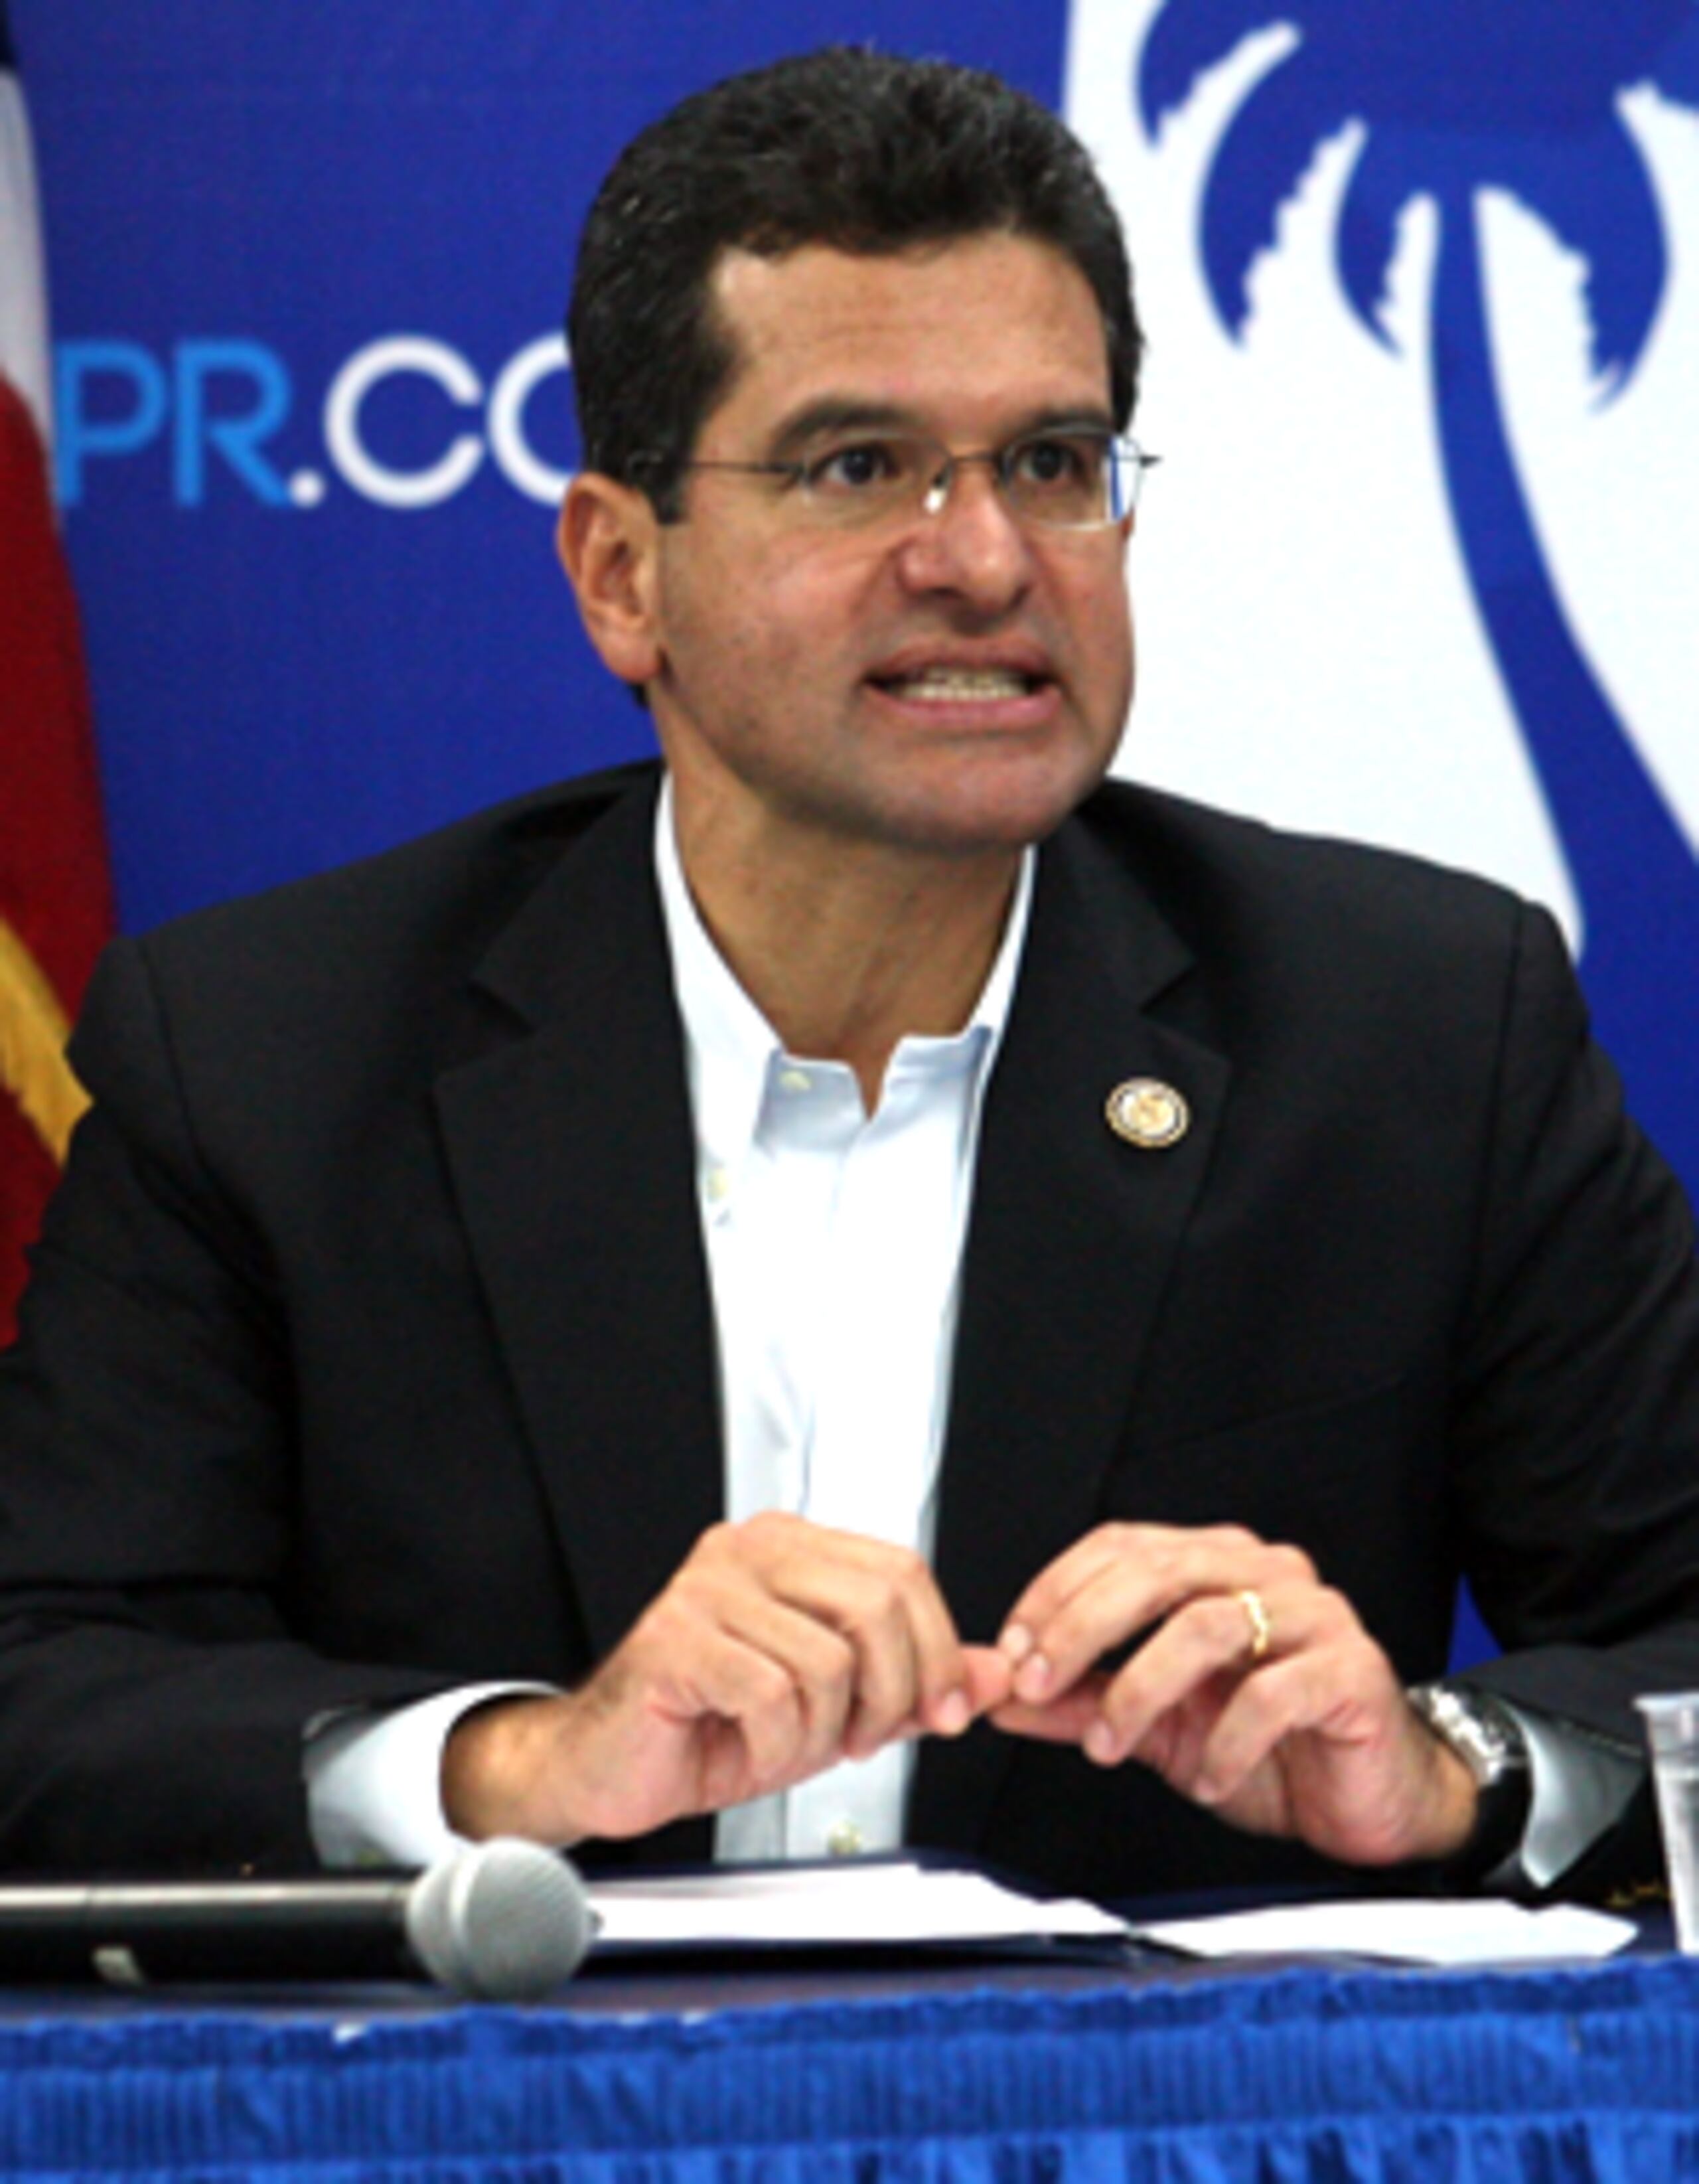 En las elecciones, el funcionario electo de mayor jerarquía bajo la insignia del PNP fue Pierluisi, quien incluso sacó más votos que García Padilla. (Archivo)